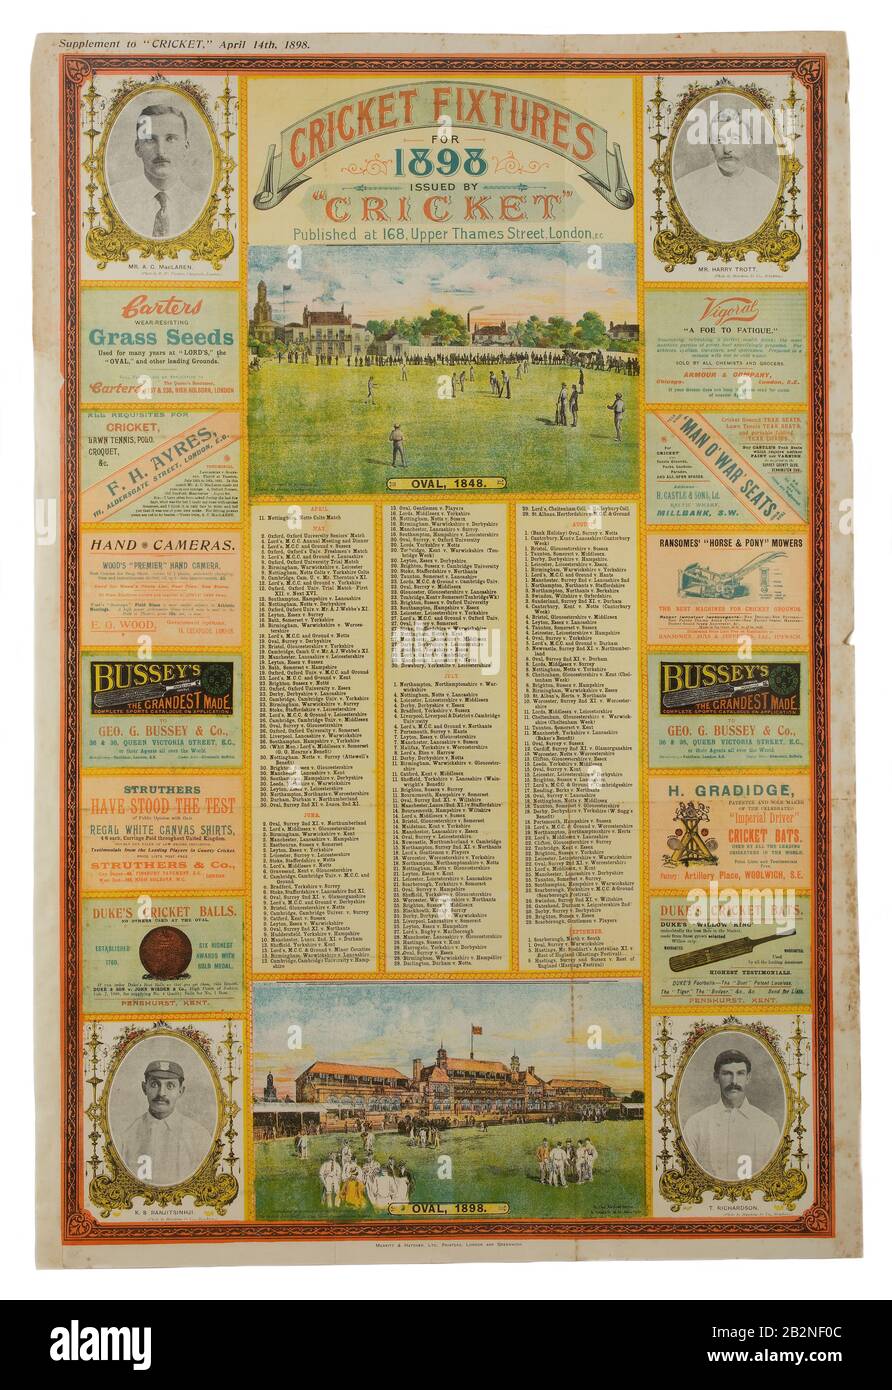 1898 Cartel de accesorios de cricket Foto de stock